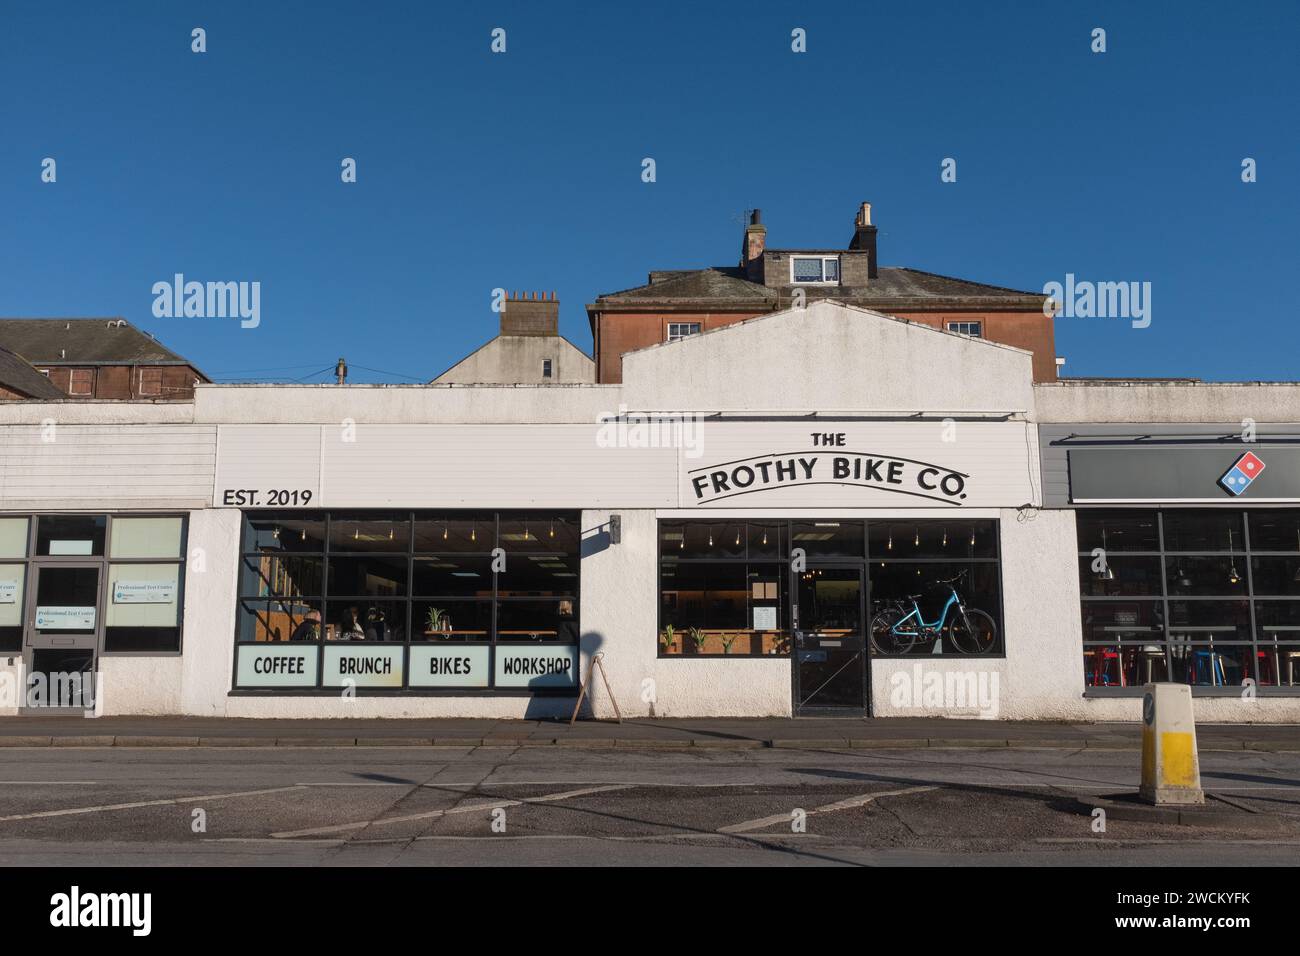 Vue de face du café Frothy Bike et magasin de vélos sur les Whitesands, Dumfries, Écosse. Celui-ci est maintenant fermé et le magasin de vélos sera déplacé. Banque D'Images